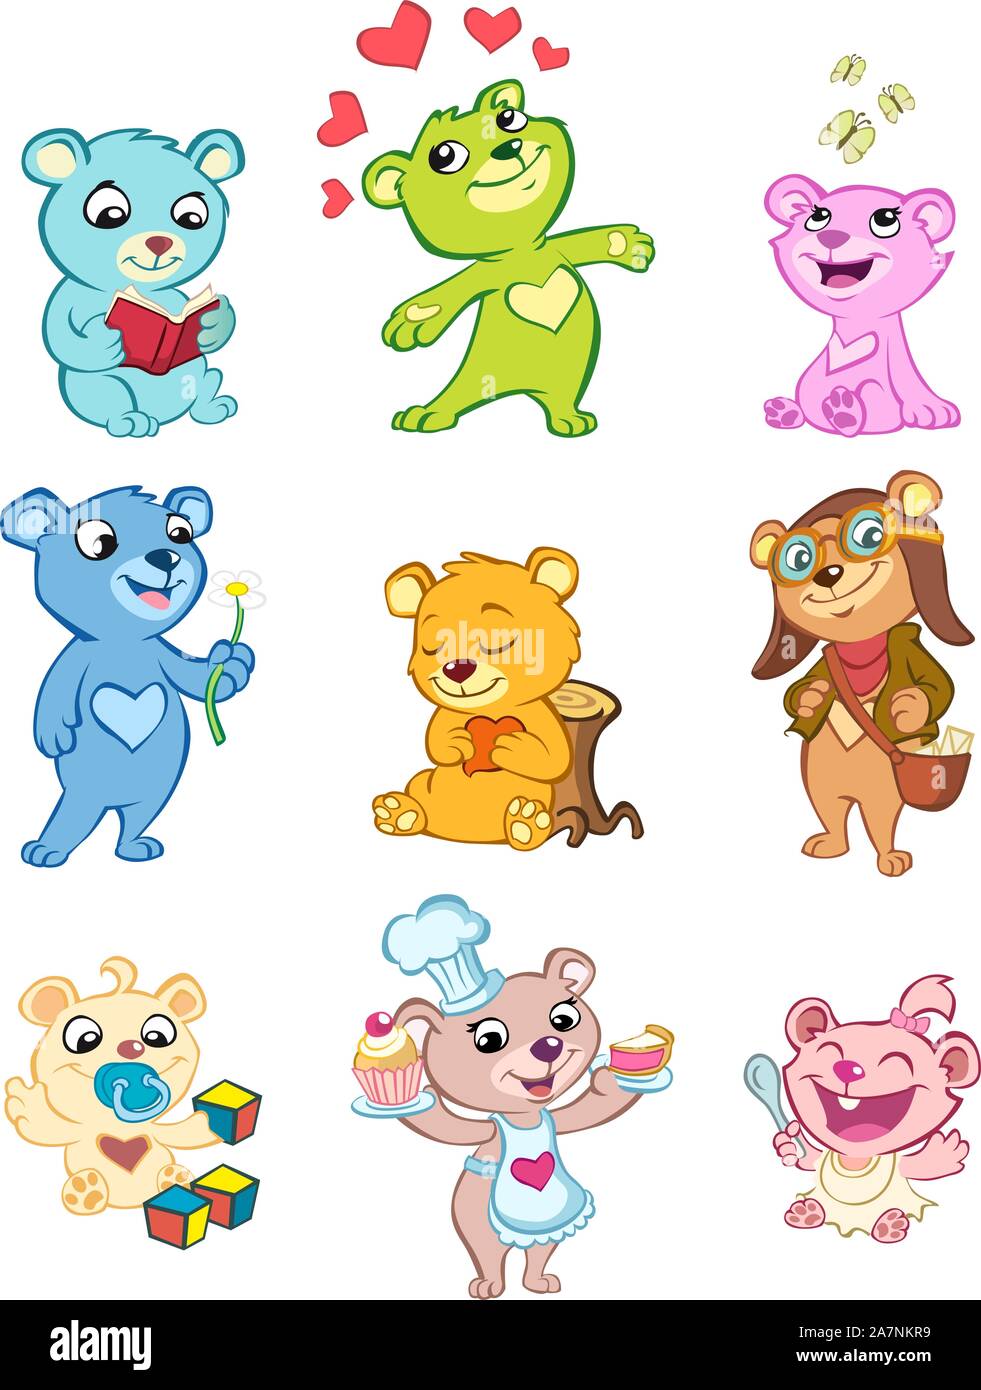 Little Stuffed Fluffy Playful Teddy Bear Toy, vector illustration cartoon. Stock Vector